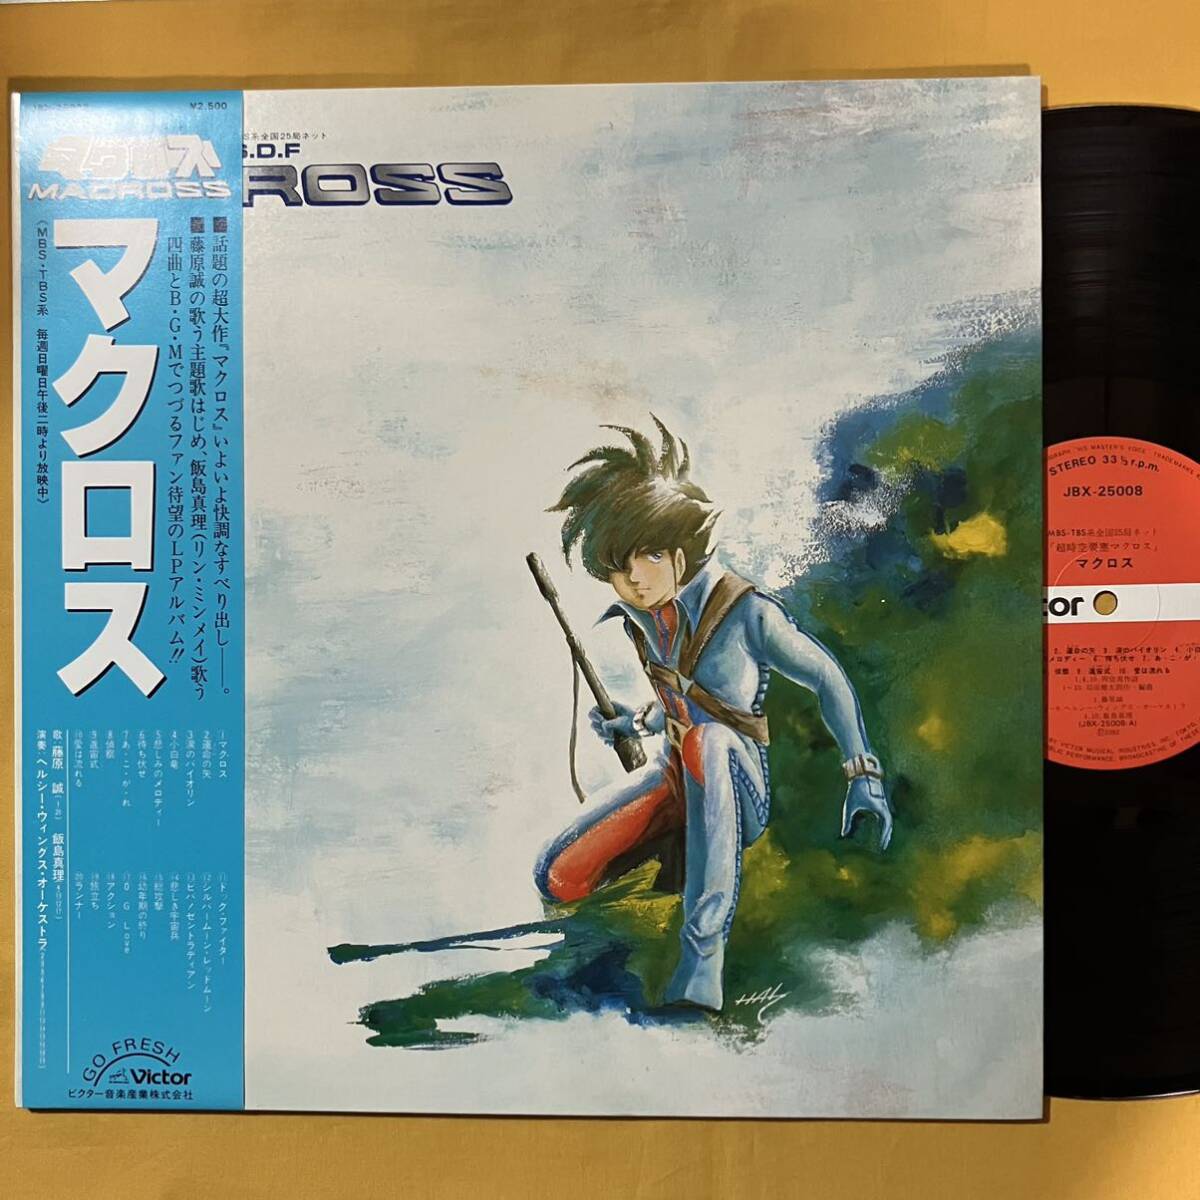 美盤 超時空要塞 マクロス 帯付き OST サントラ 羽田健太郎 JBX-25008 オリジナル・サウンド・トラック LP レコード アナログ盤の画像1